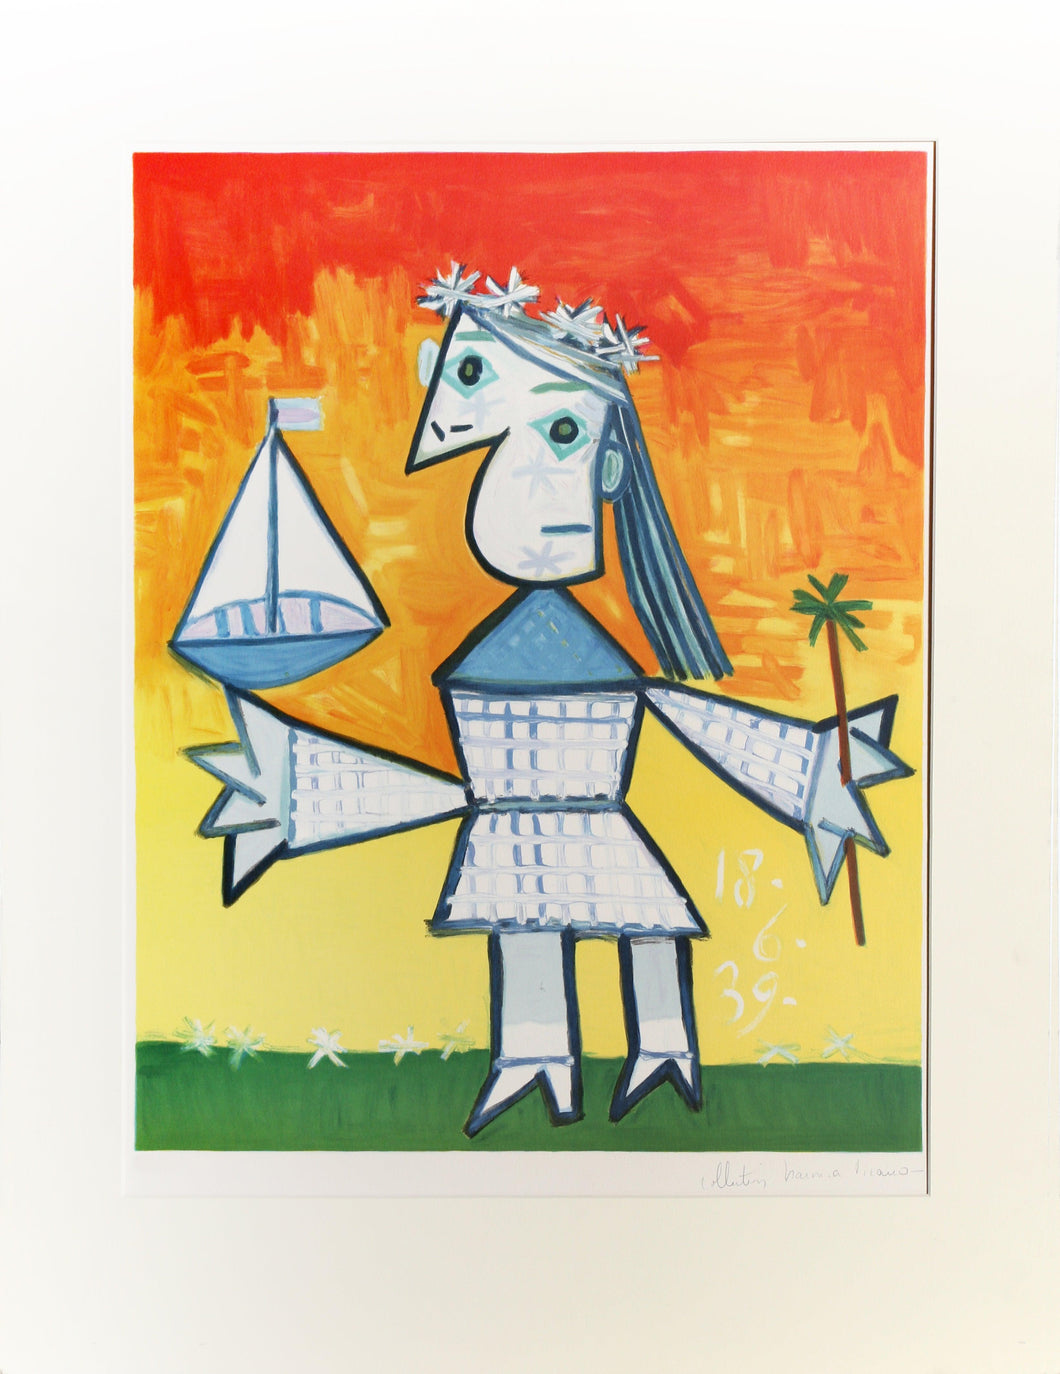 Fillette Couronee au Bateau Lithograph | Pablo Picasso,{{product.type}}